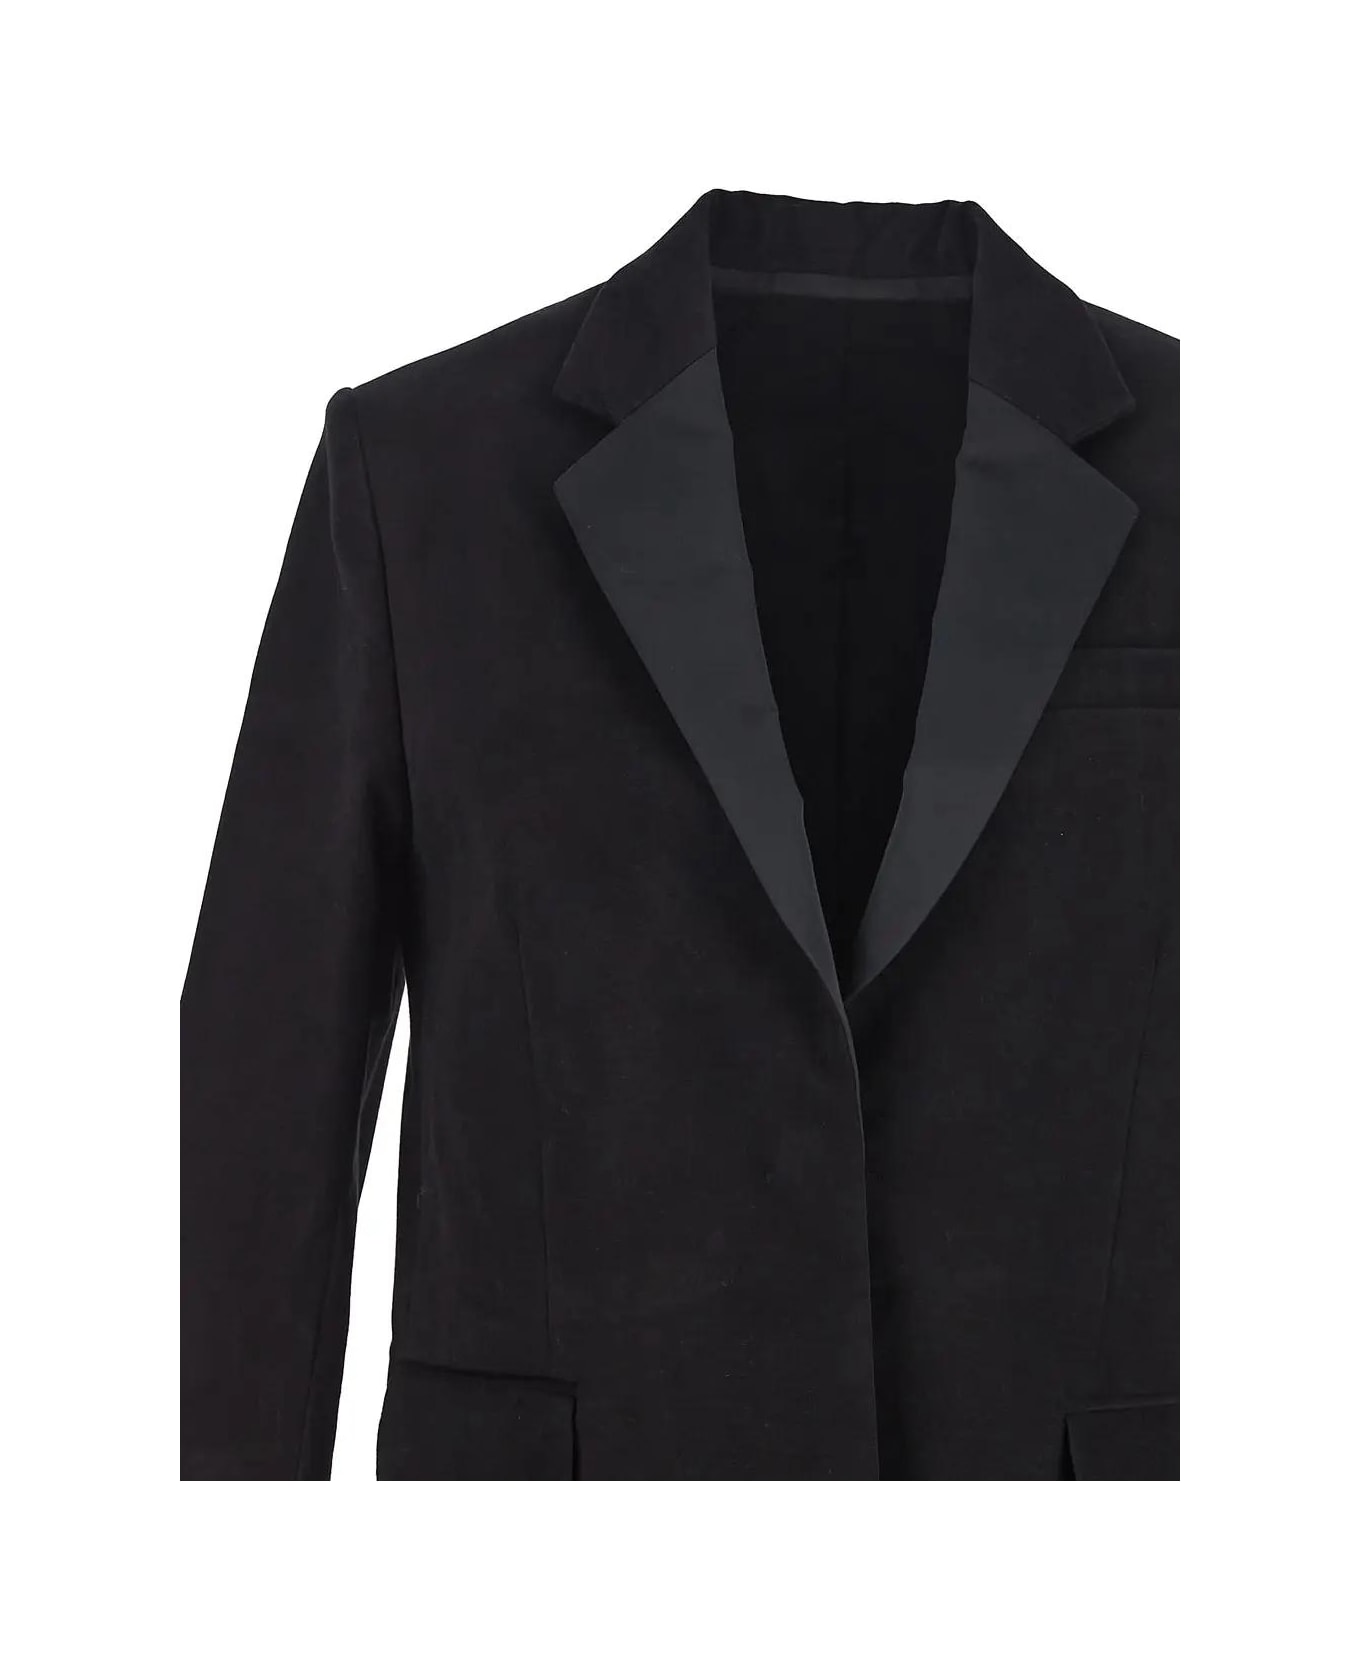 Isabel Marant Hadiya Tuxedo Jacket - BLACK コート